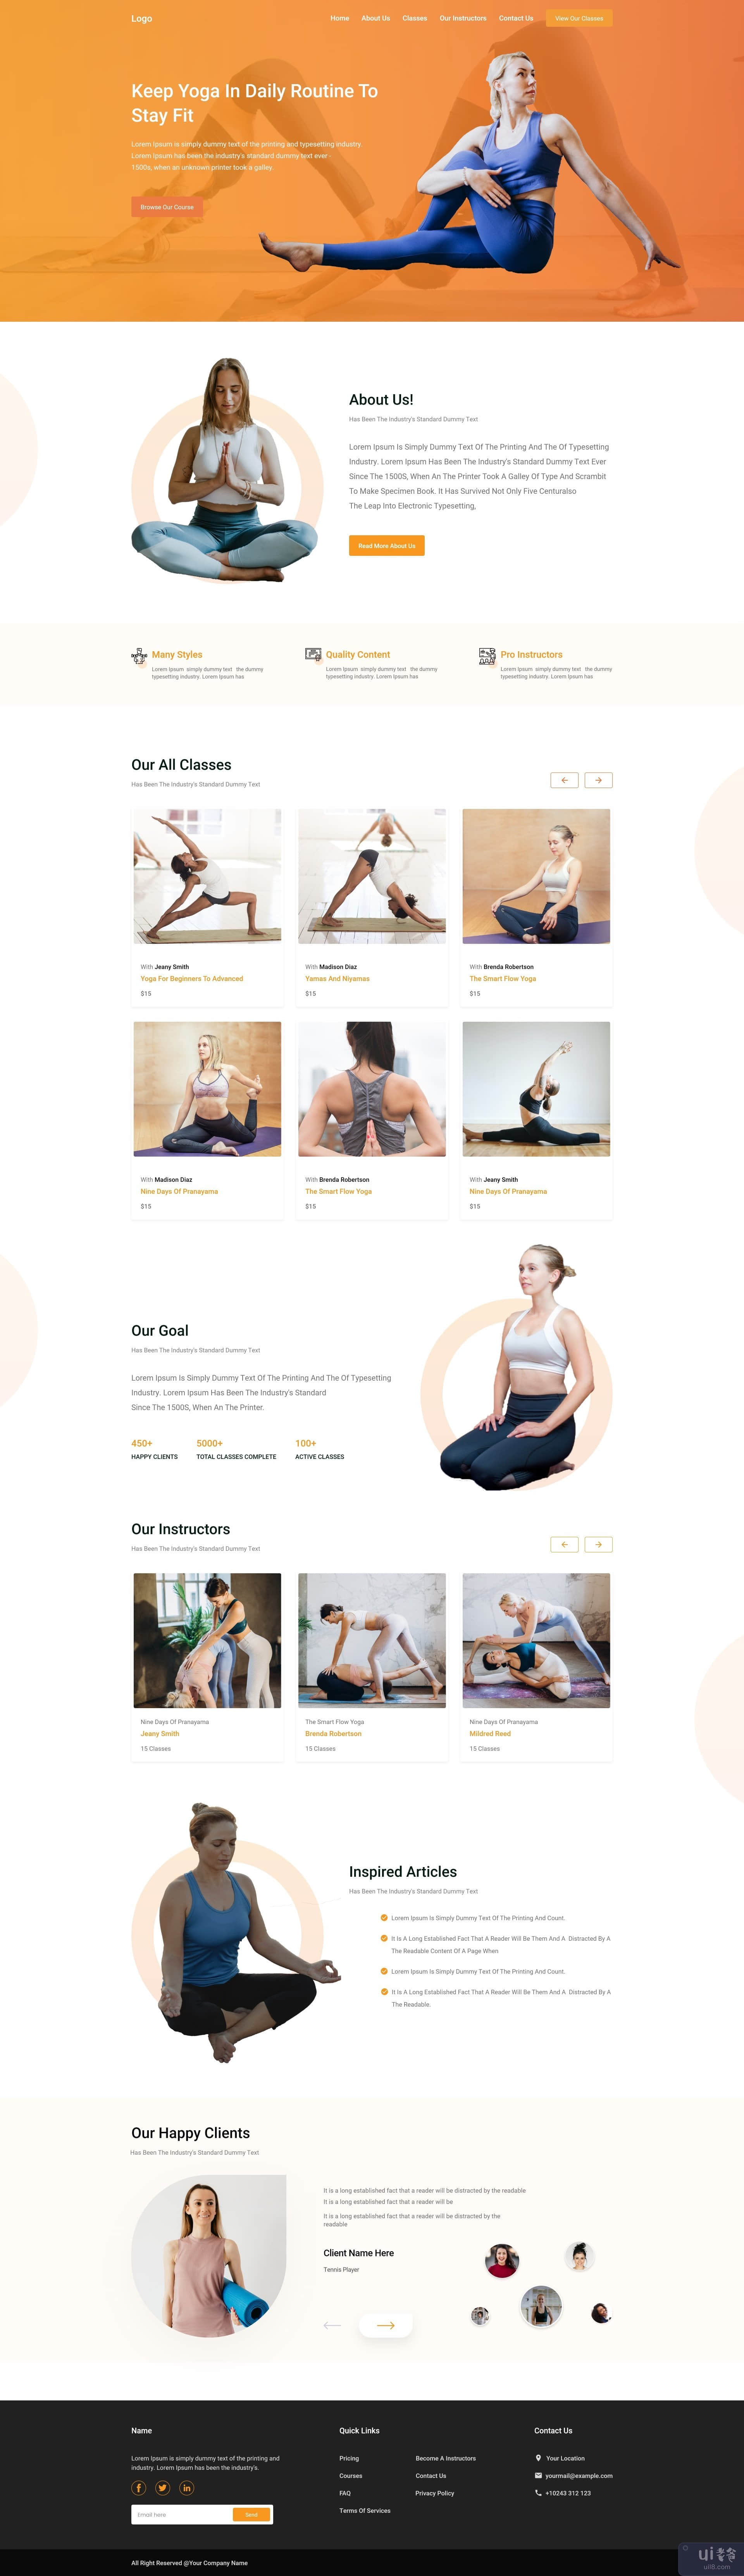 基于网络的瑜伽登陆页面(Web-based Yoga landing page)插图